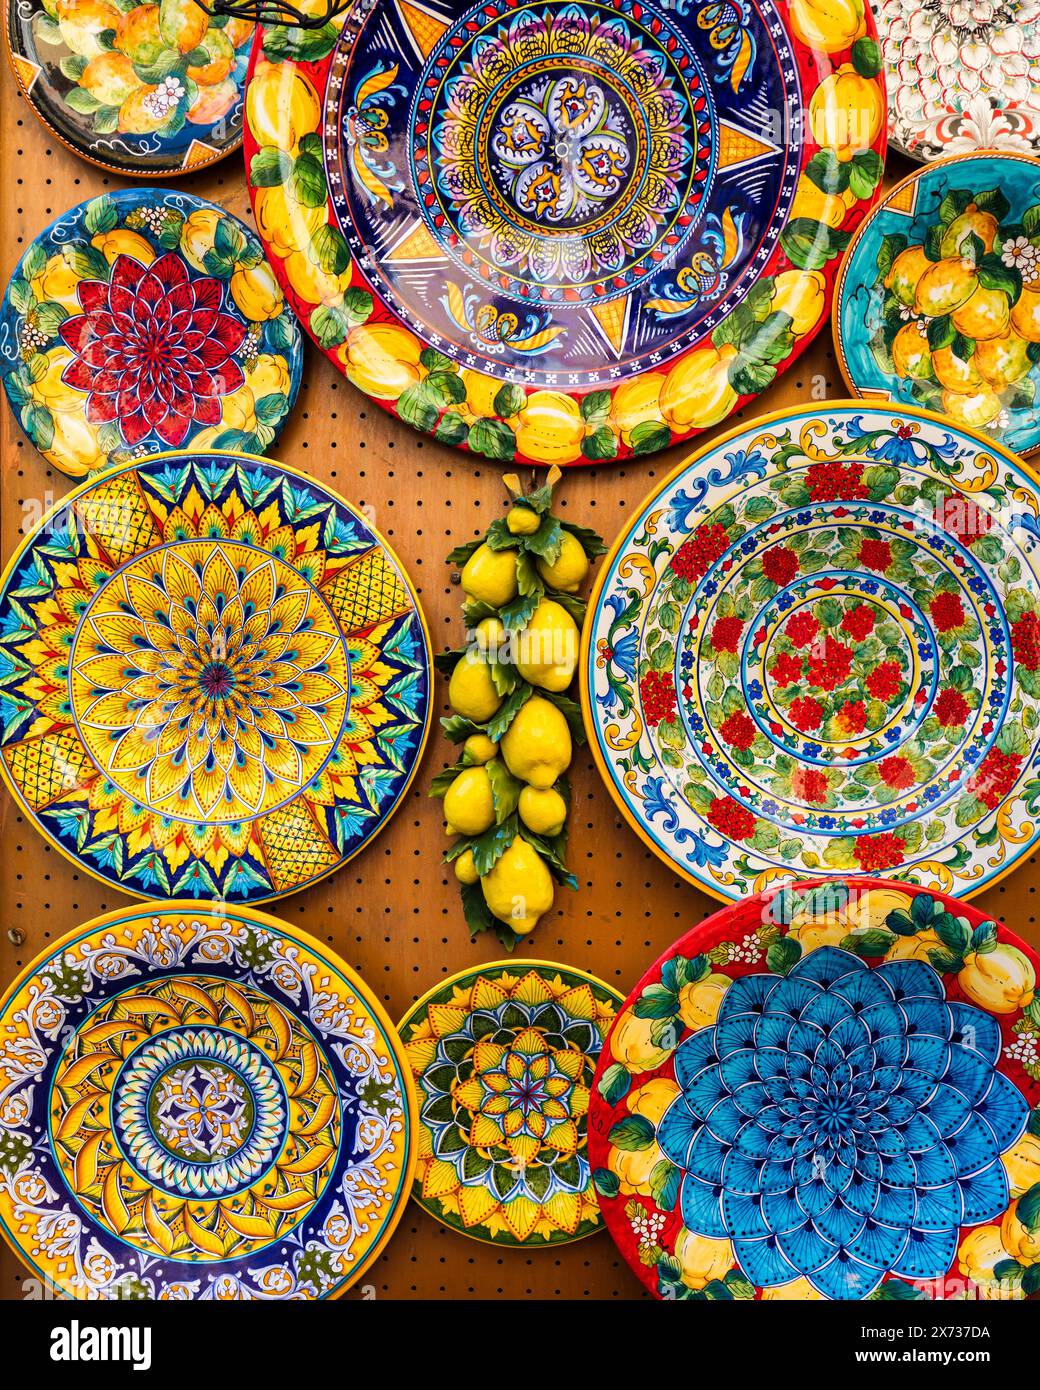 Collezione di ceramiche italiane colorate, prodotti artigianali locali da Positano, Italia. Piatti in ceramica esposti a Positano, Italia. Colorato di vint Foto Stock